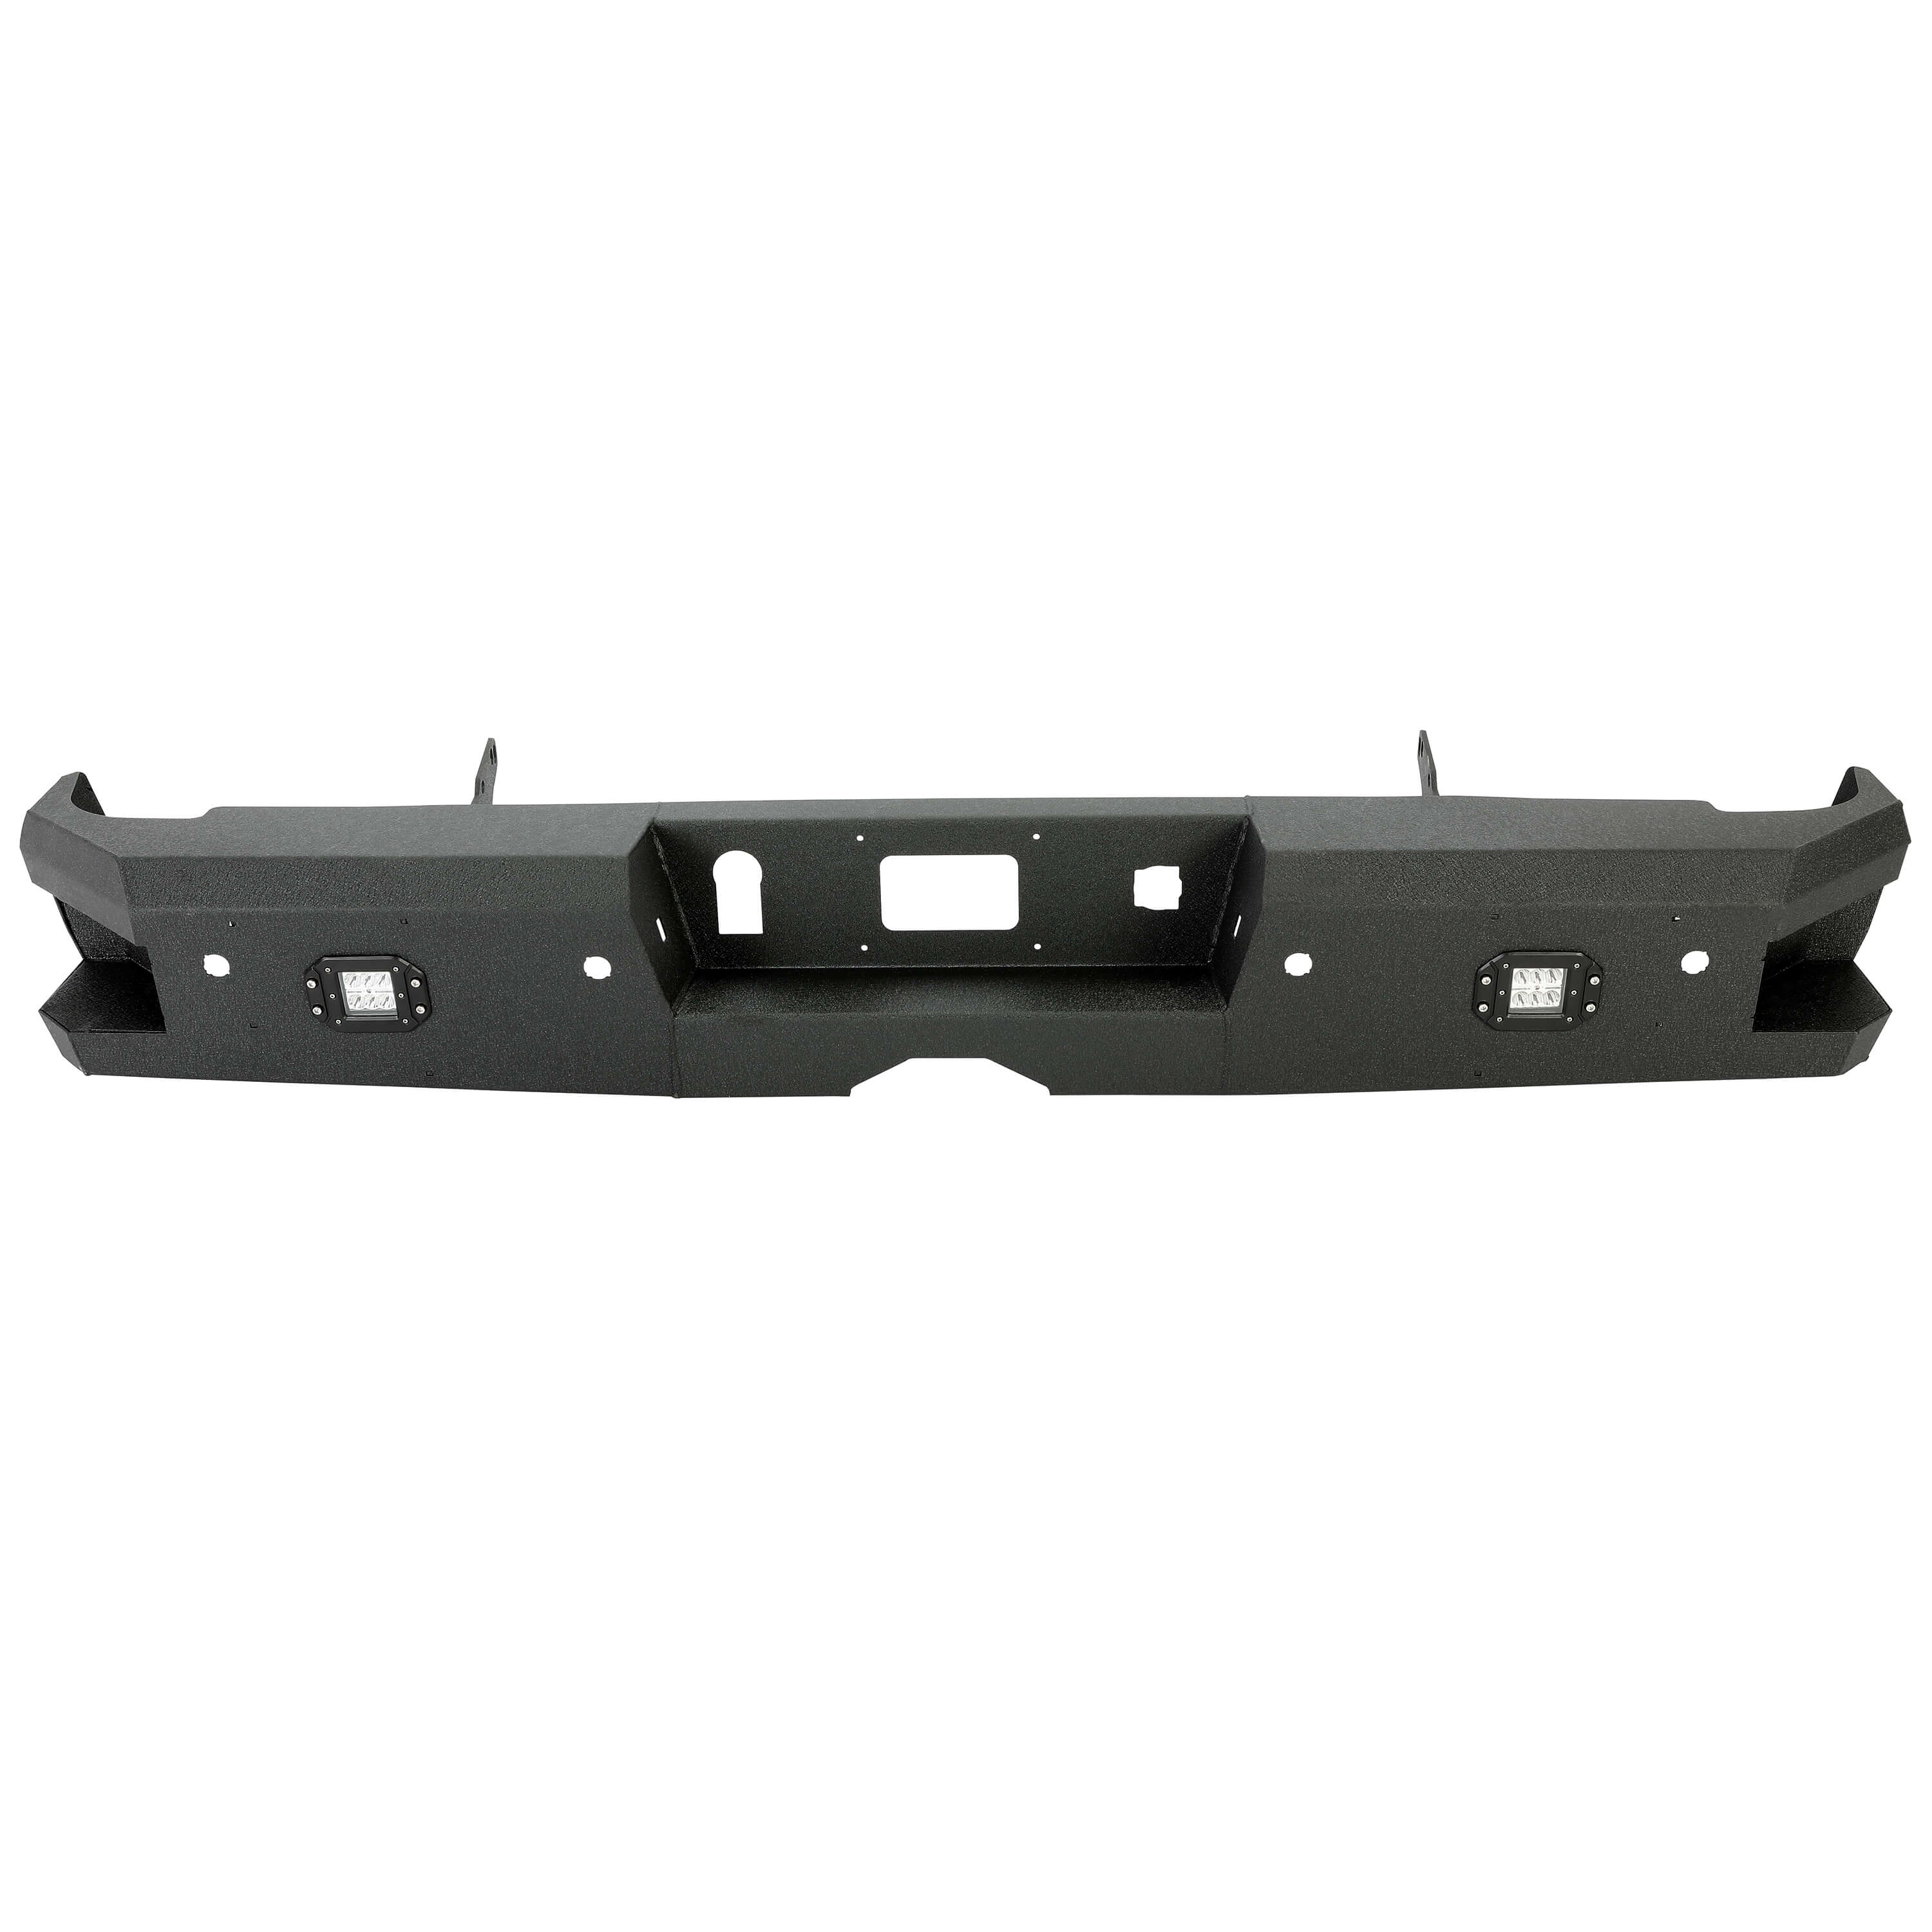 YIKATOO® Off-Road Rear Bumper Heavy-duty Steel Compatible